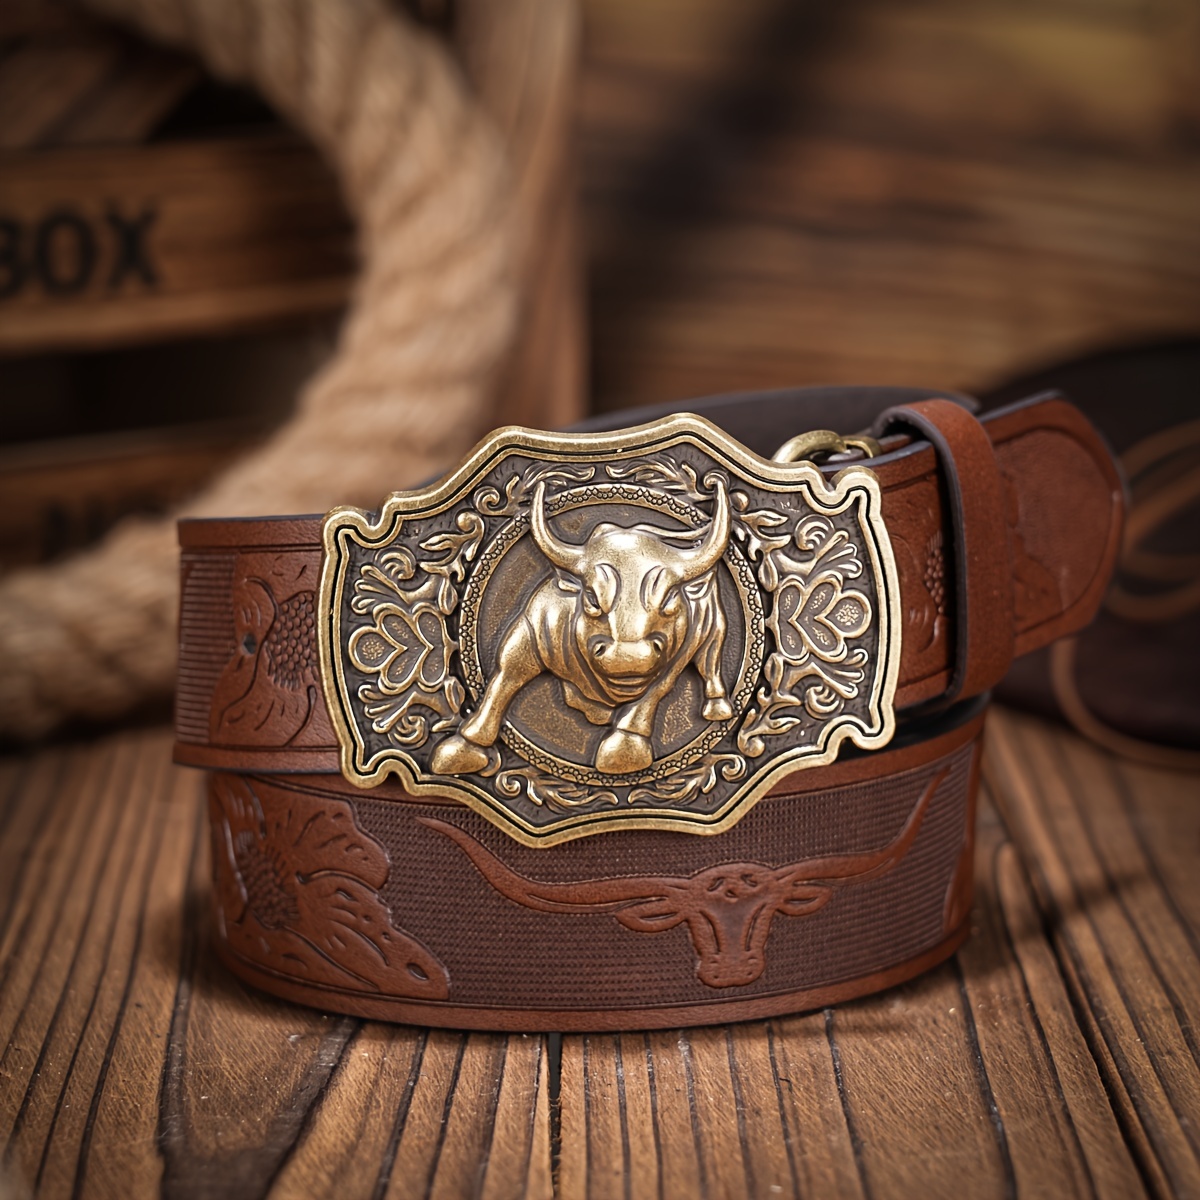 Western Cowboy Belts for Men Women - Bull Floral Engraved Belt